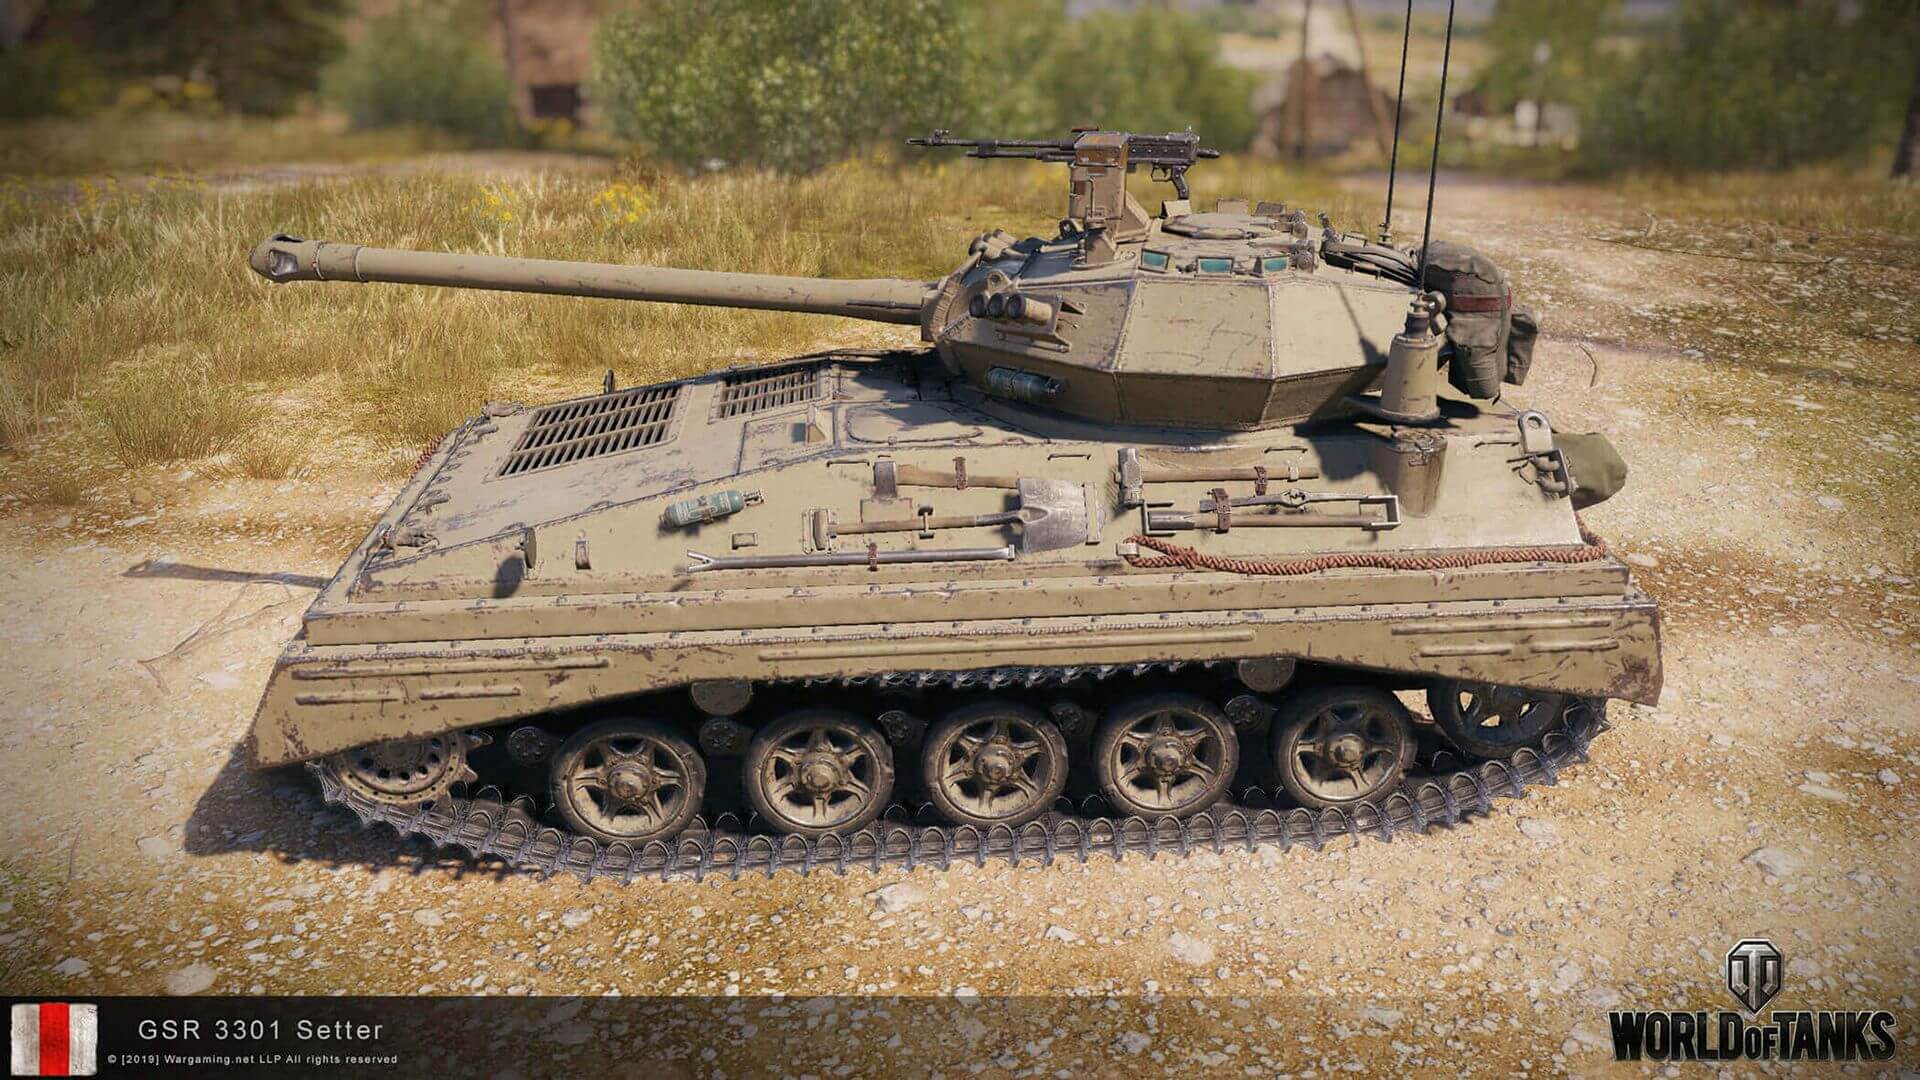 british modern tanks